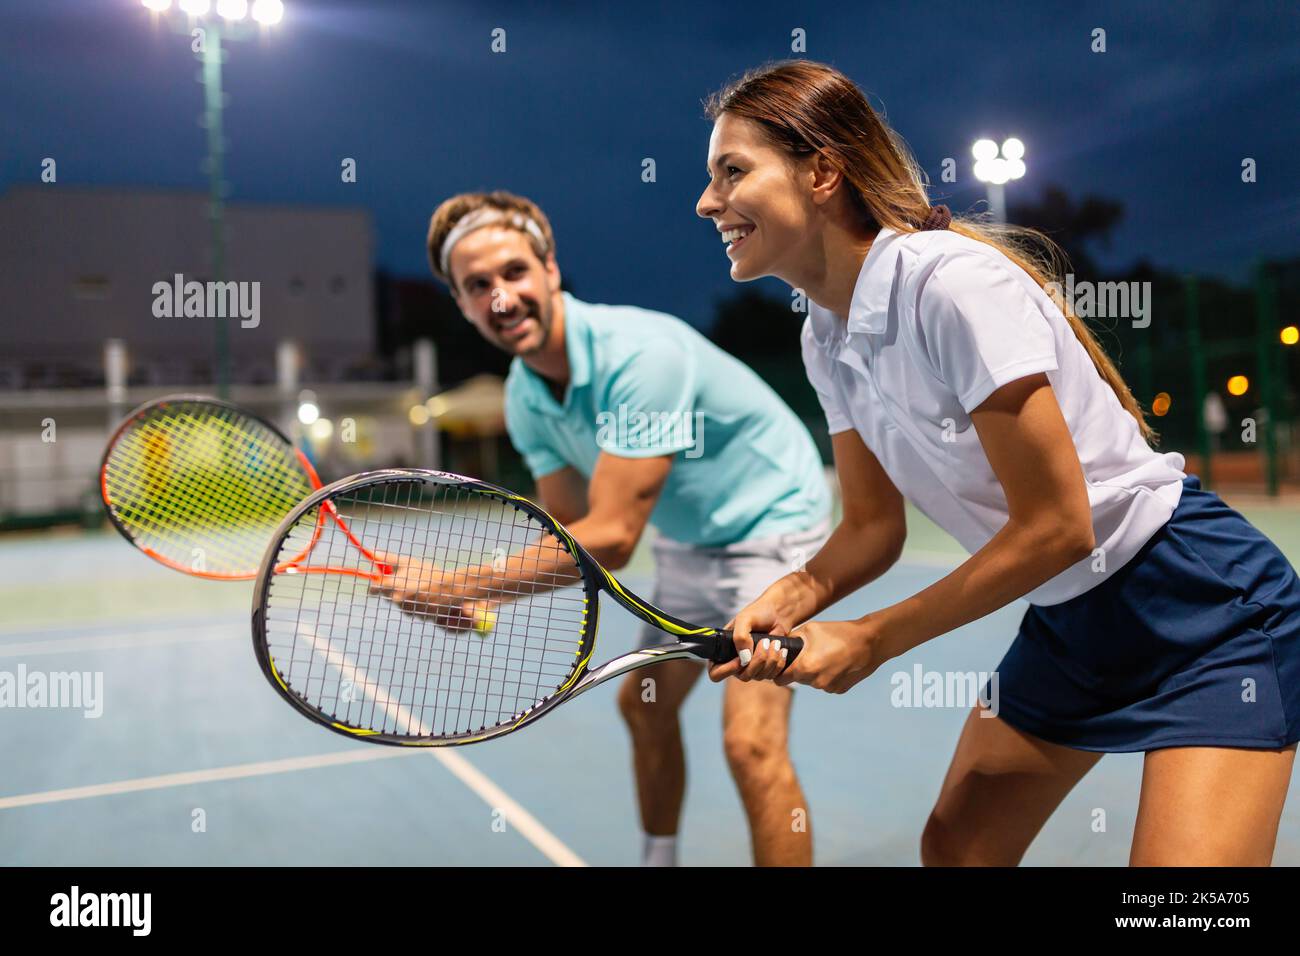 Pareja joven en pista de tenis. Hombre guapo y mujer atractiva están jugando al tenis. Foto de stock